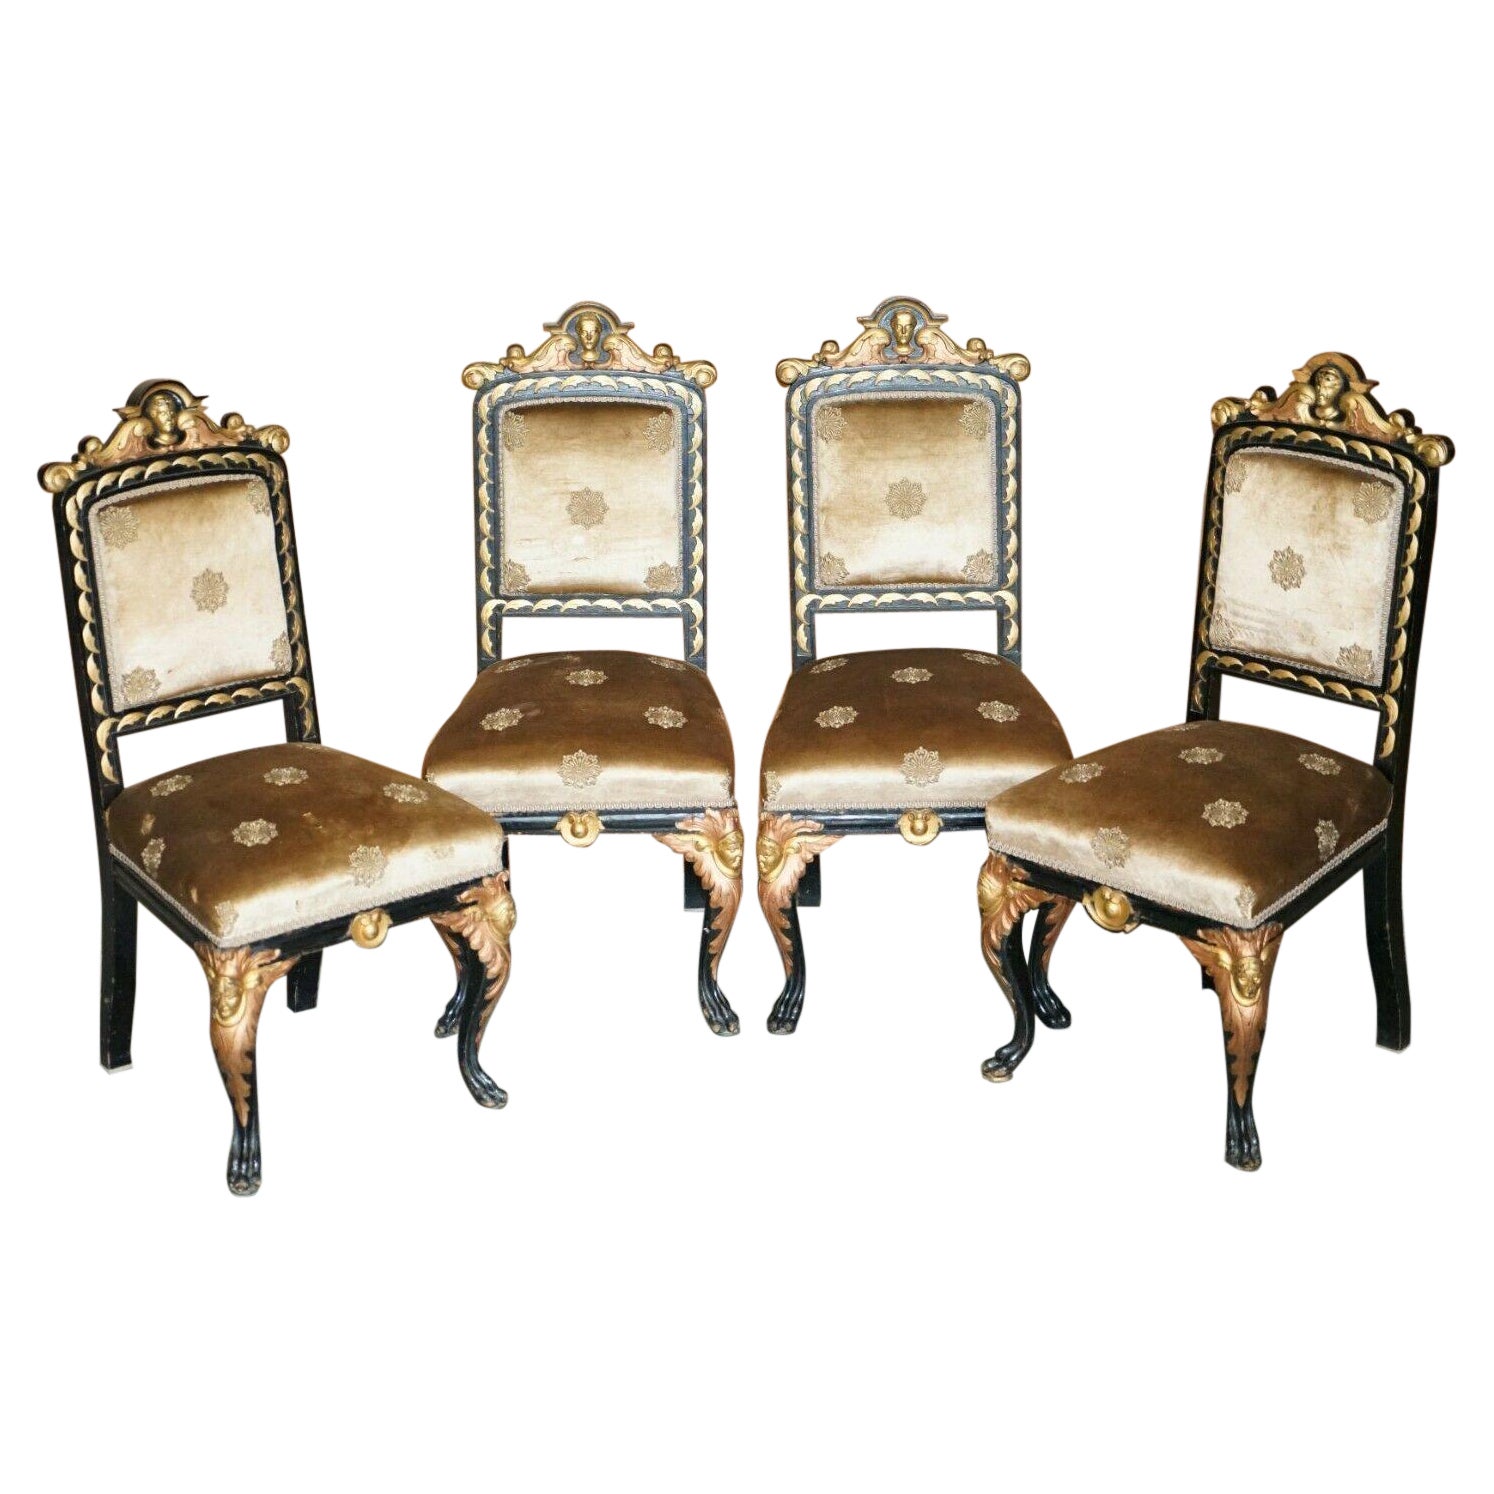 Quatre chaises de salle à manger victoriennes anciennes restaurées, très sculptées et dorées à l'or ébénisé